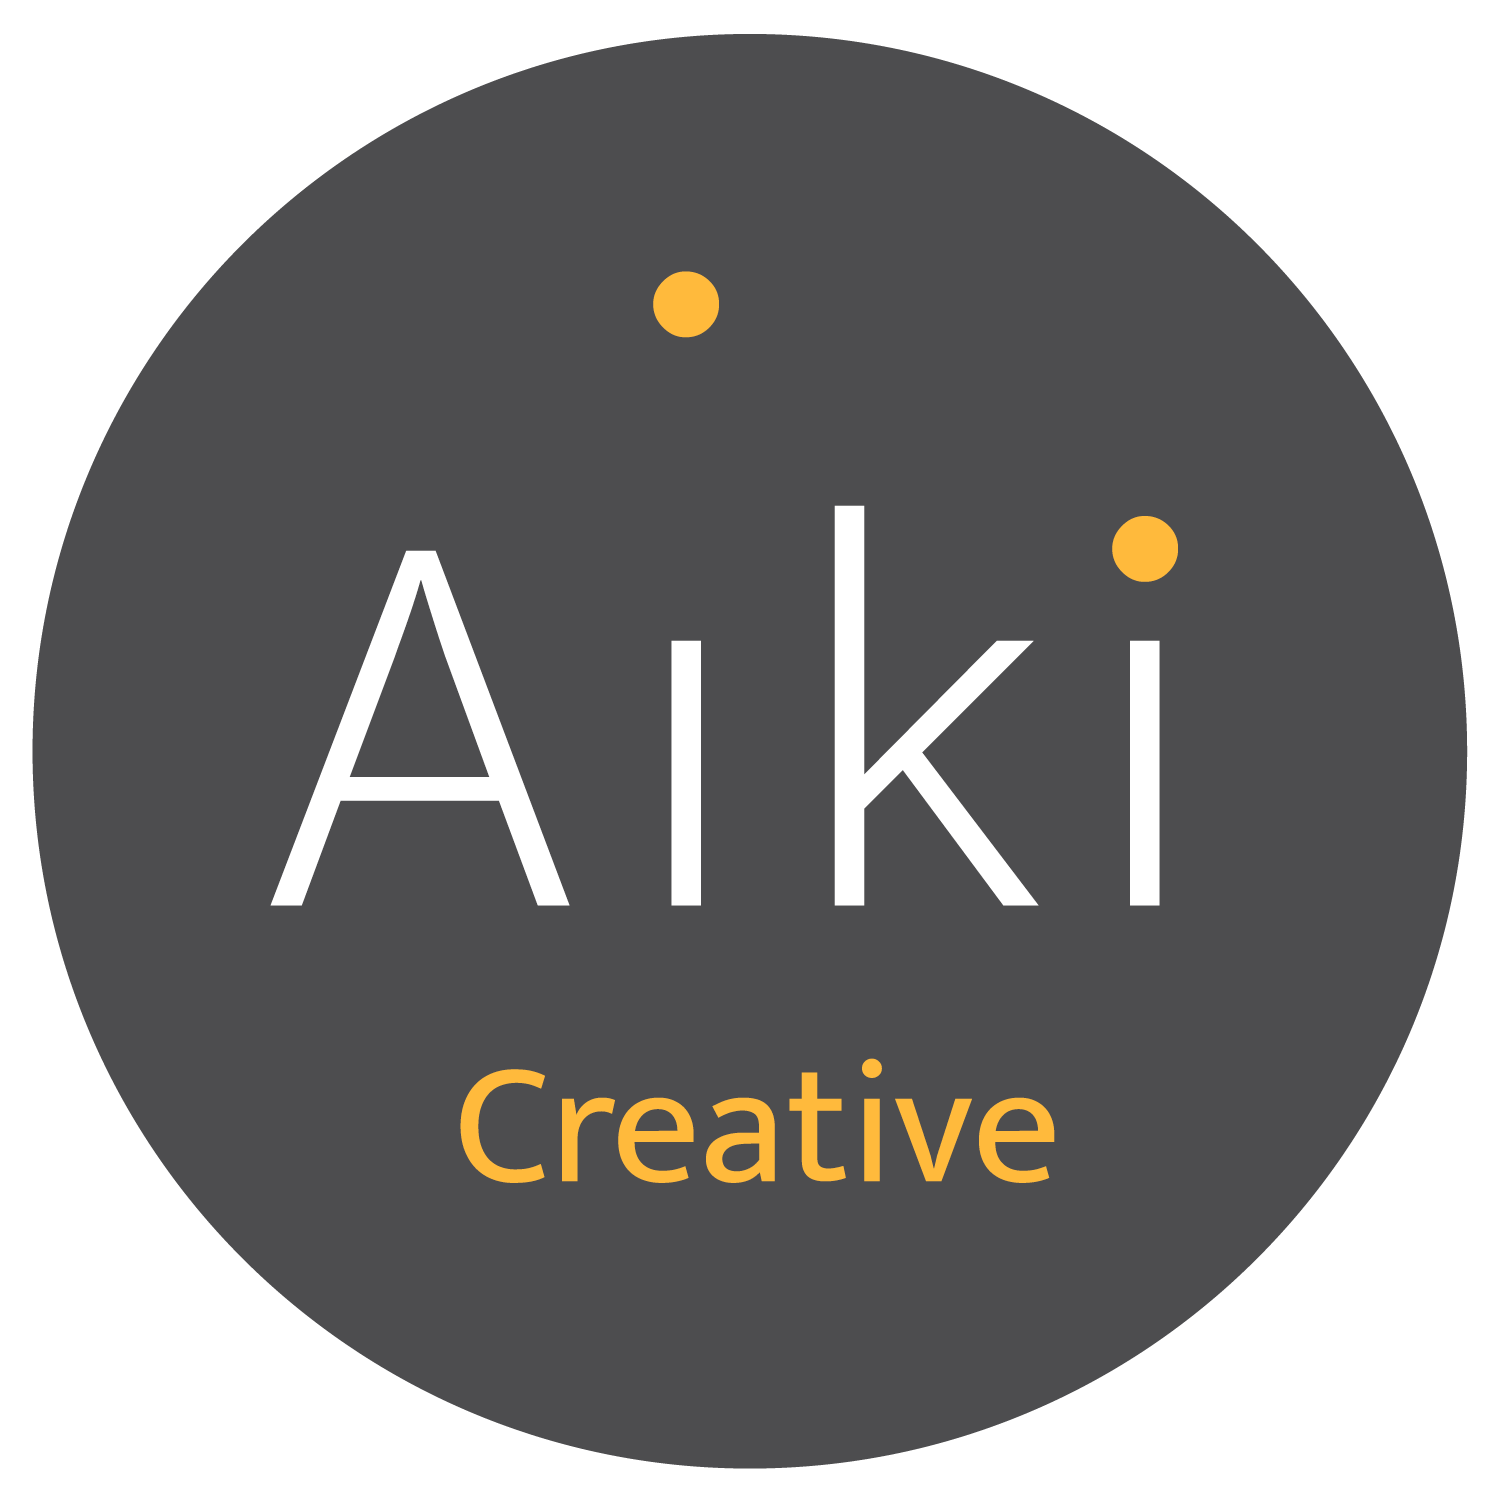 Aiki Creative